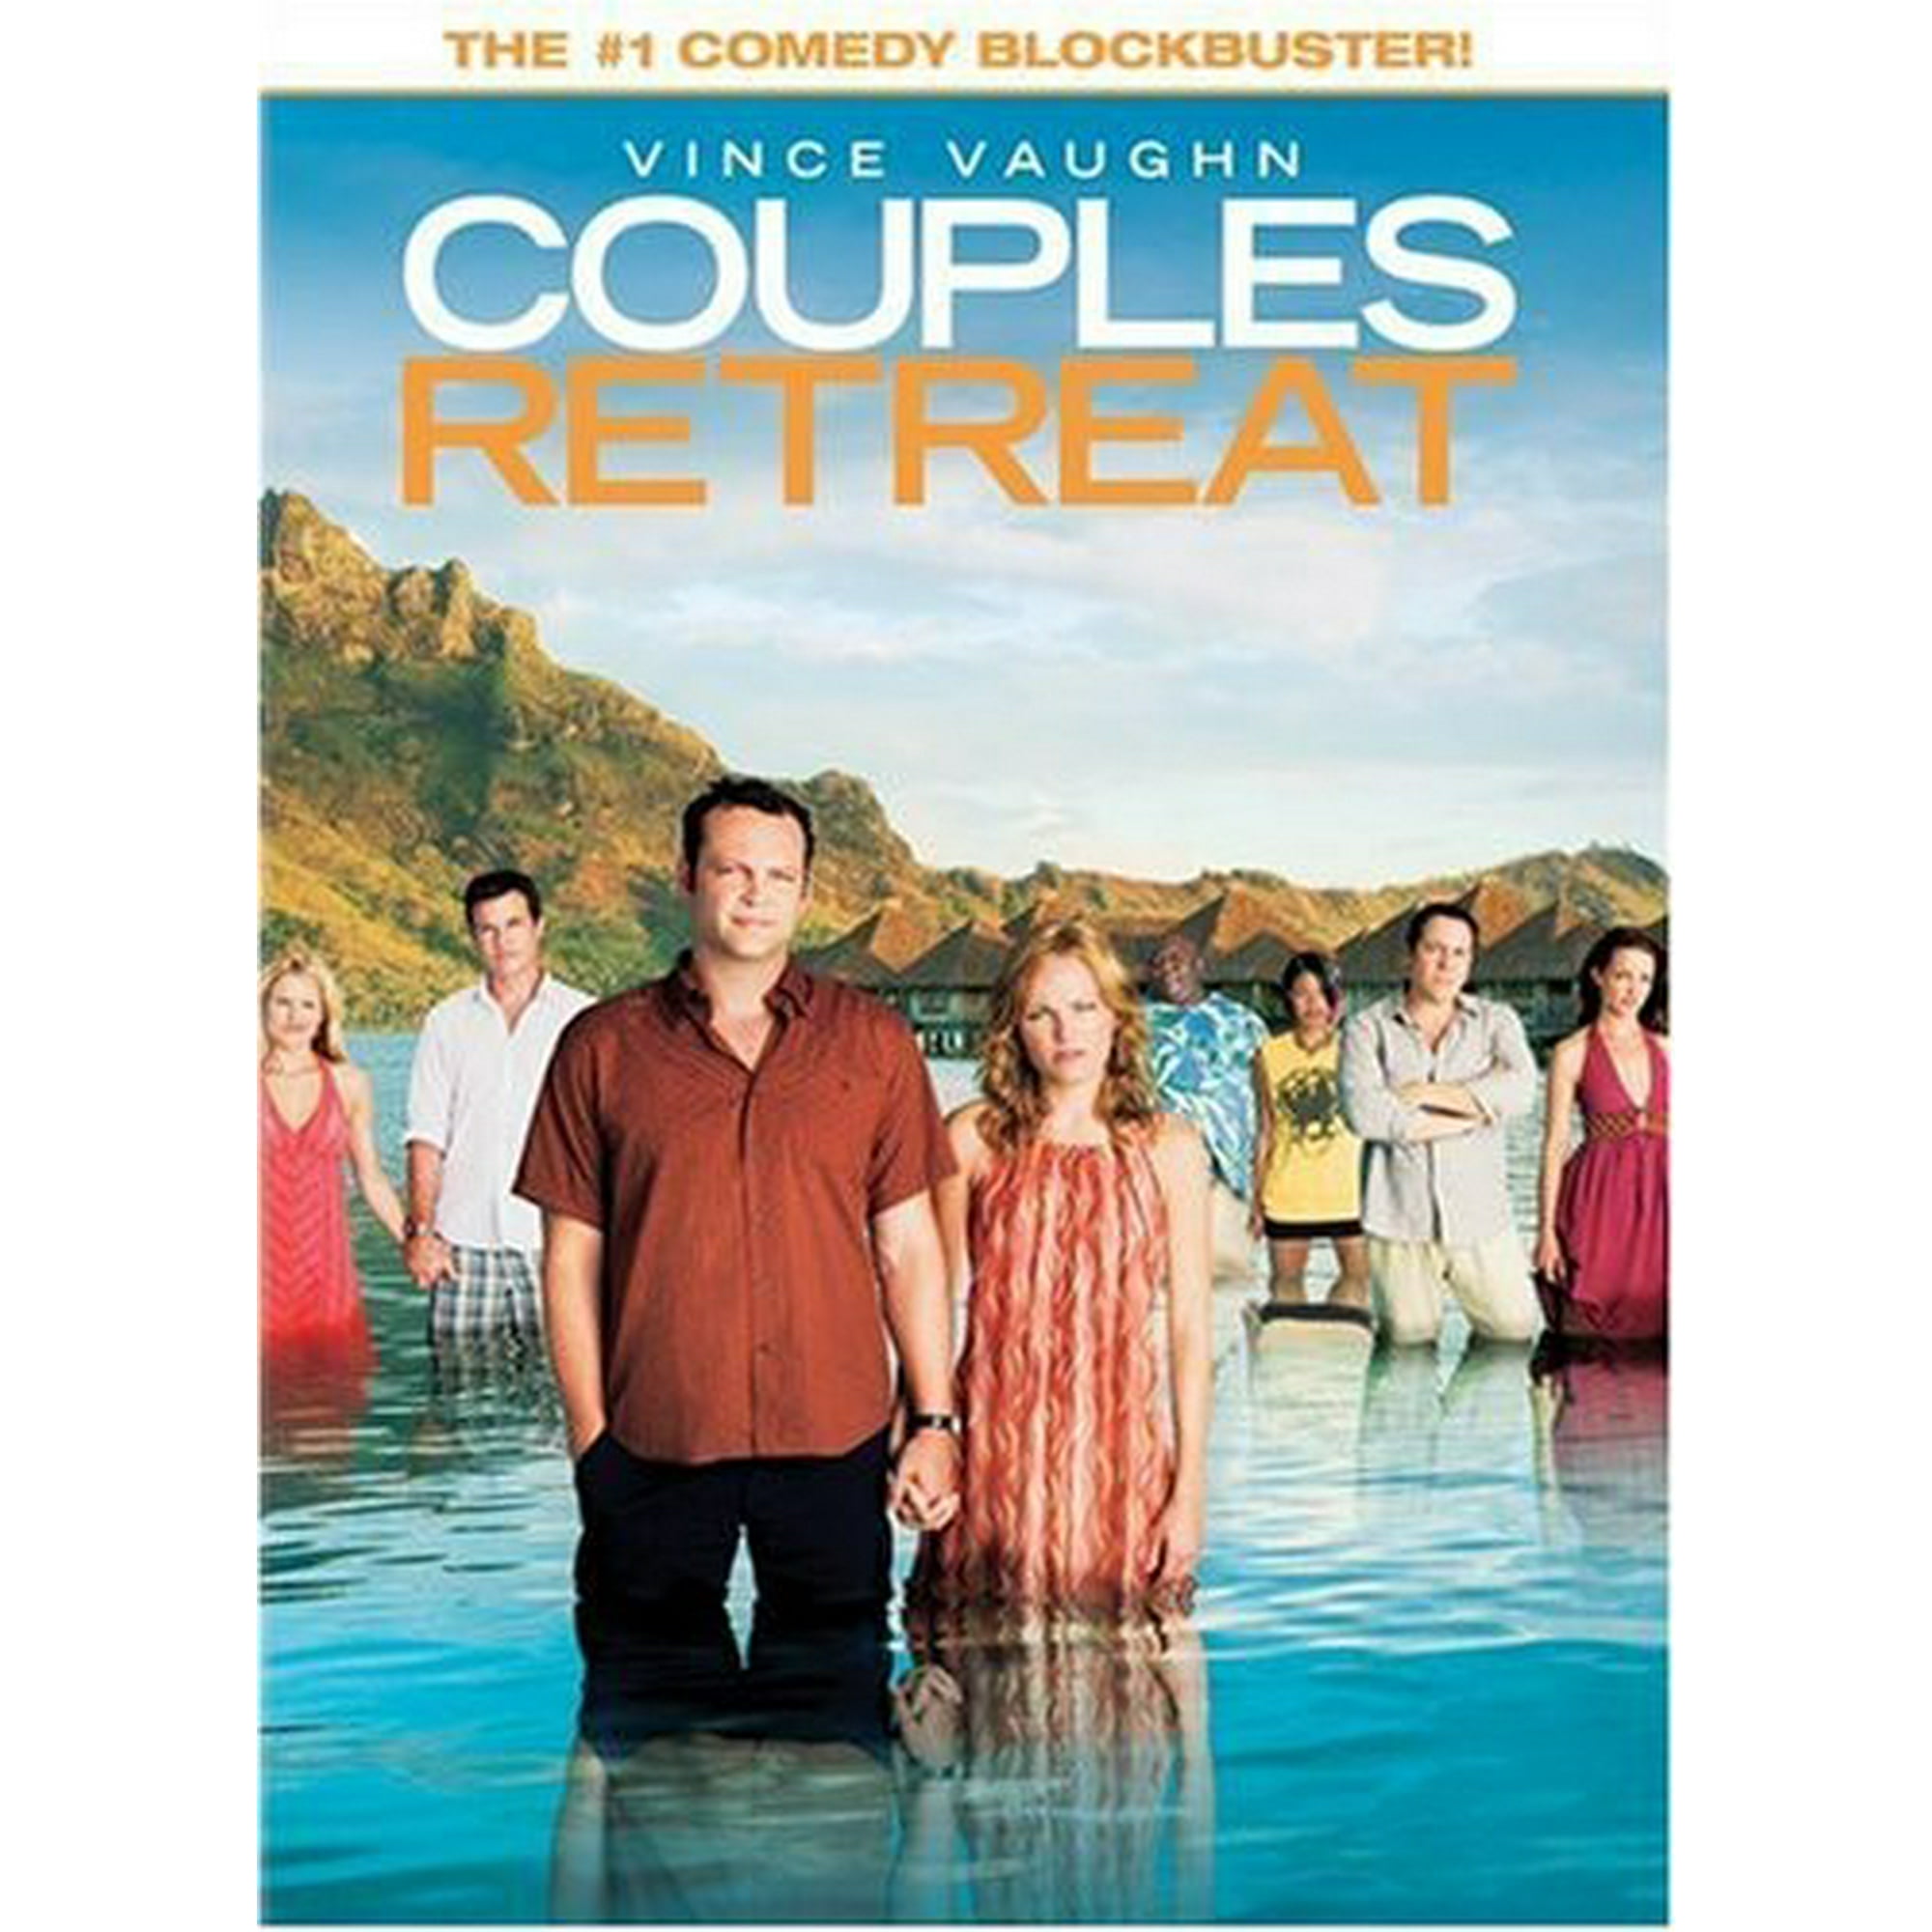 couples retreat cast